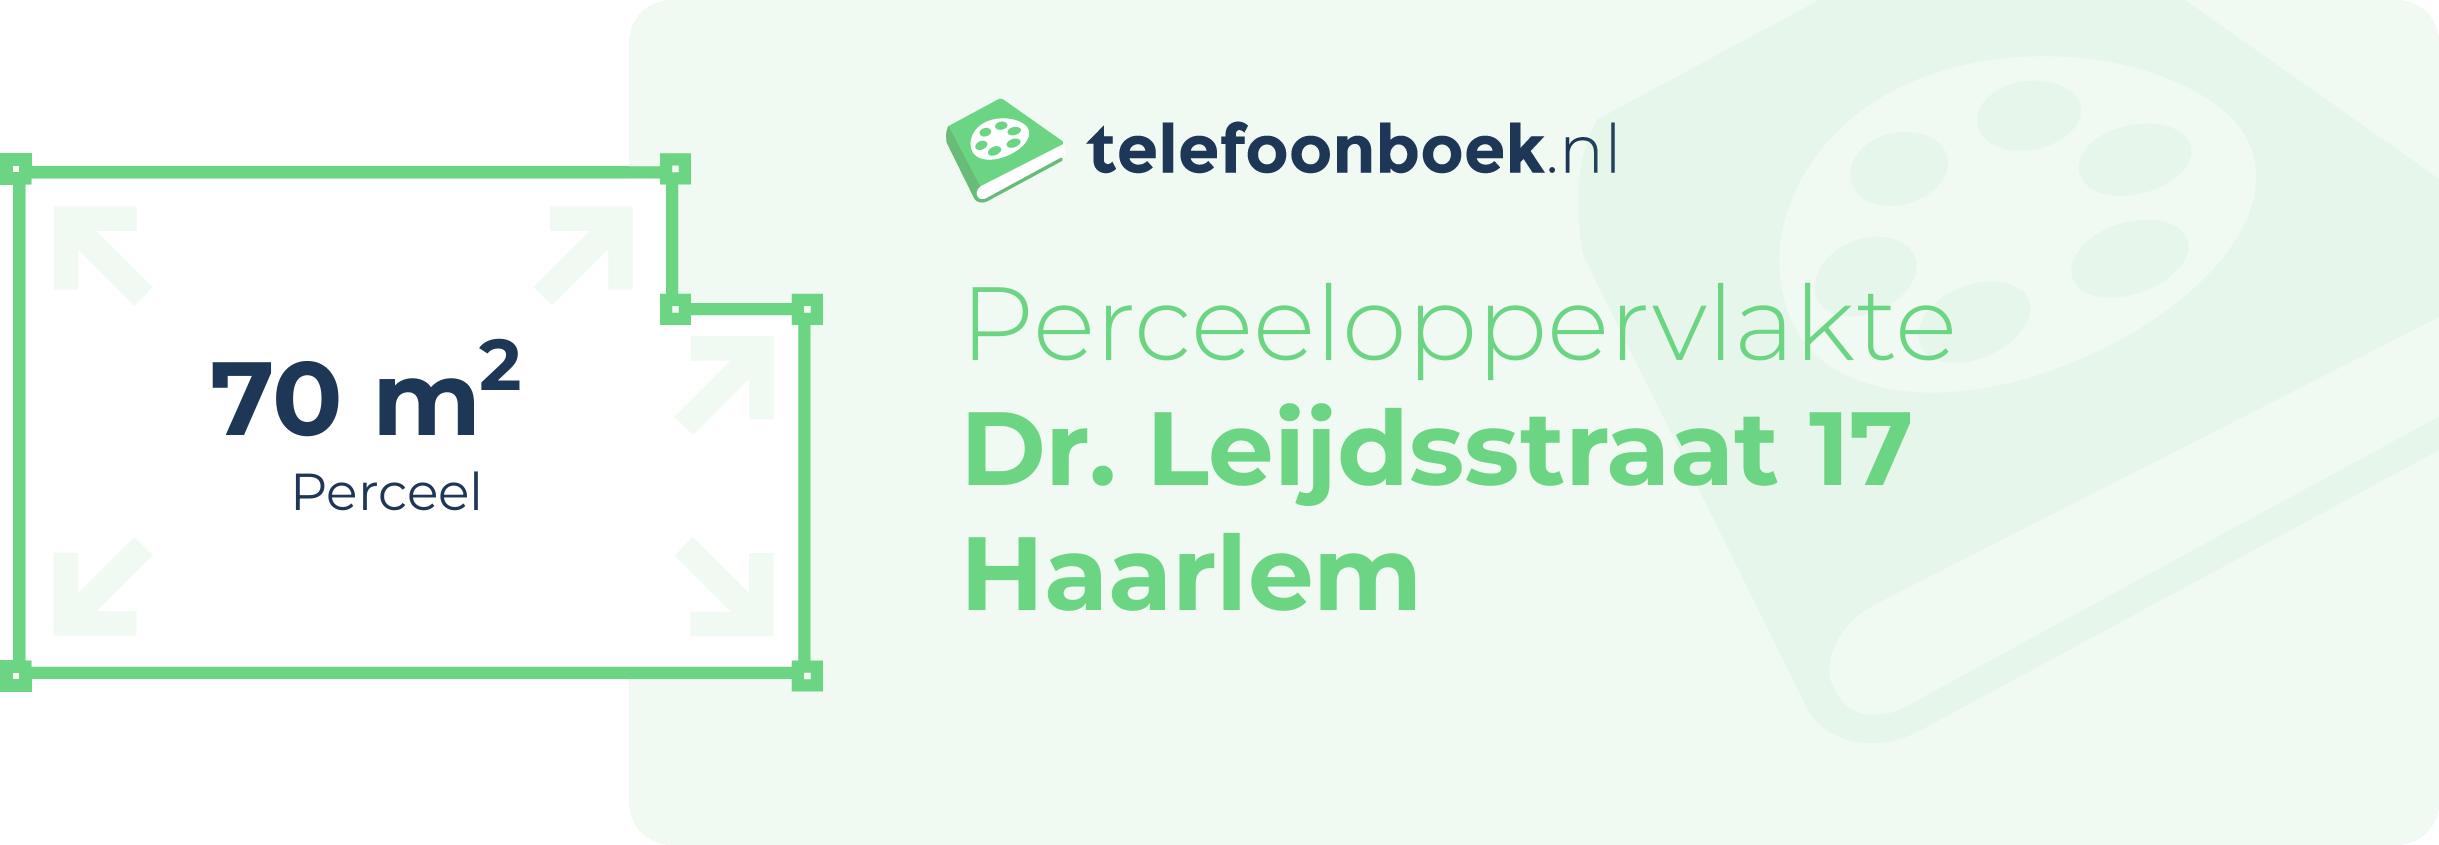 Perceeloppervlakte Dr. Leijdsstraat 17 Haarlem